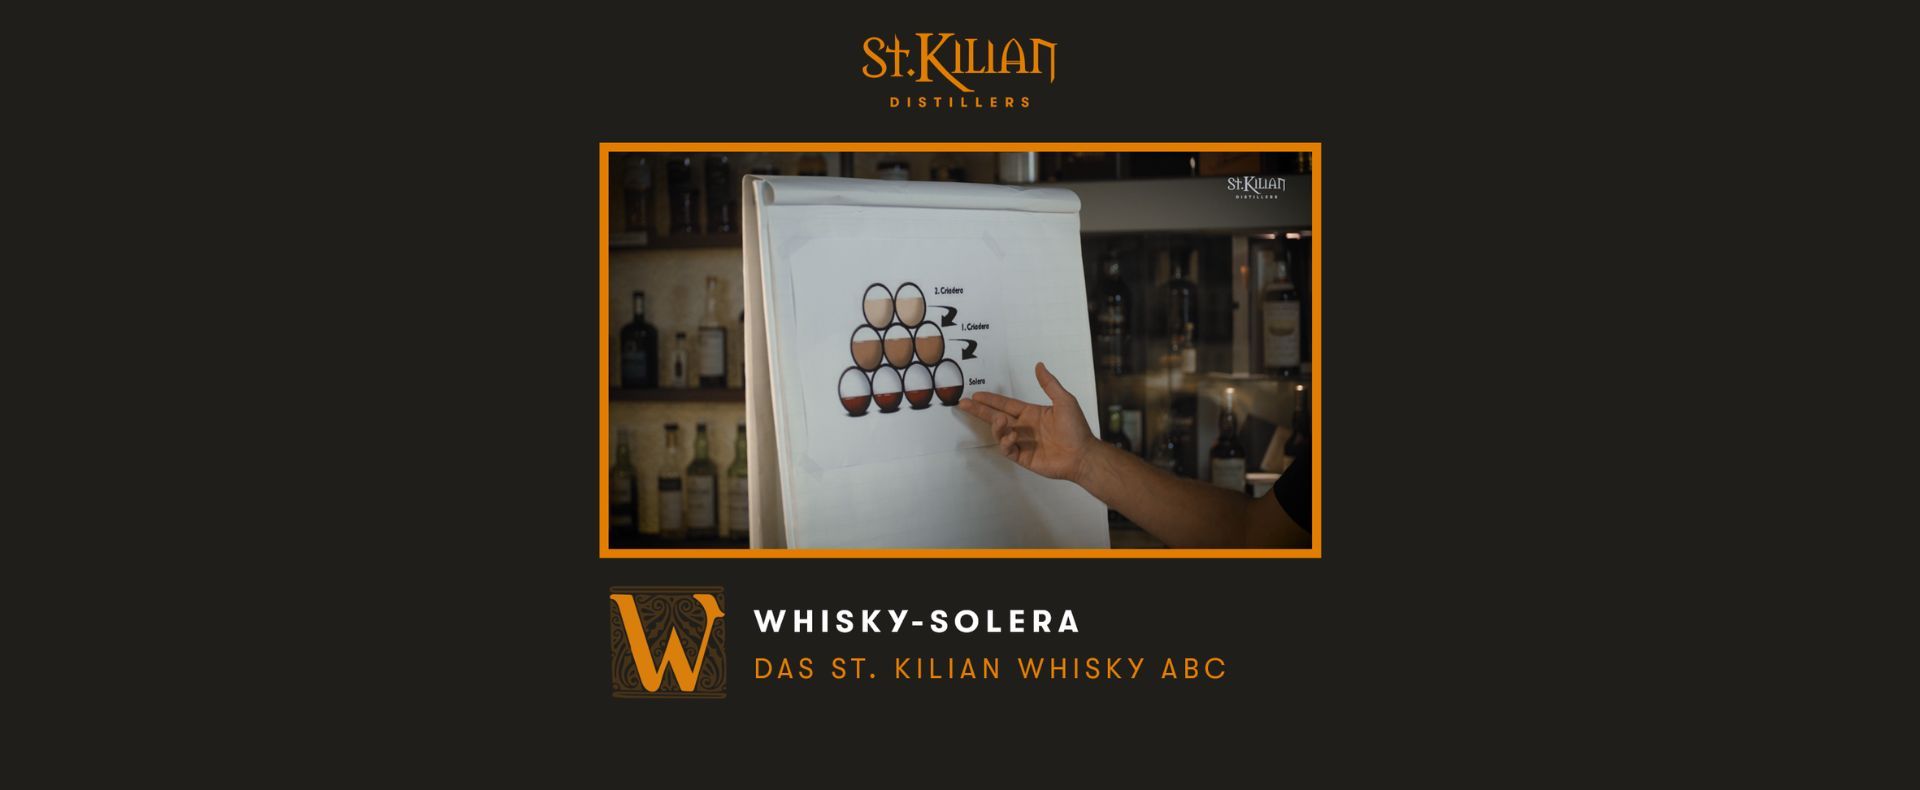 Whisky ABC - W wie Whisky-Solera